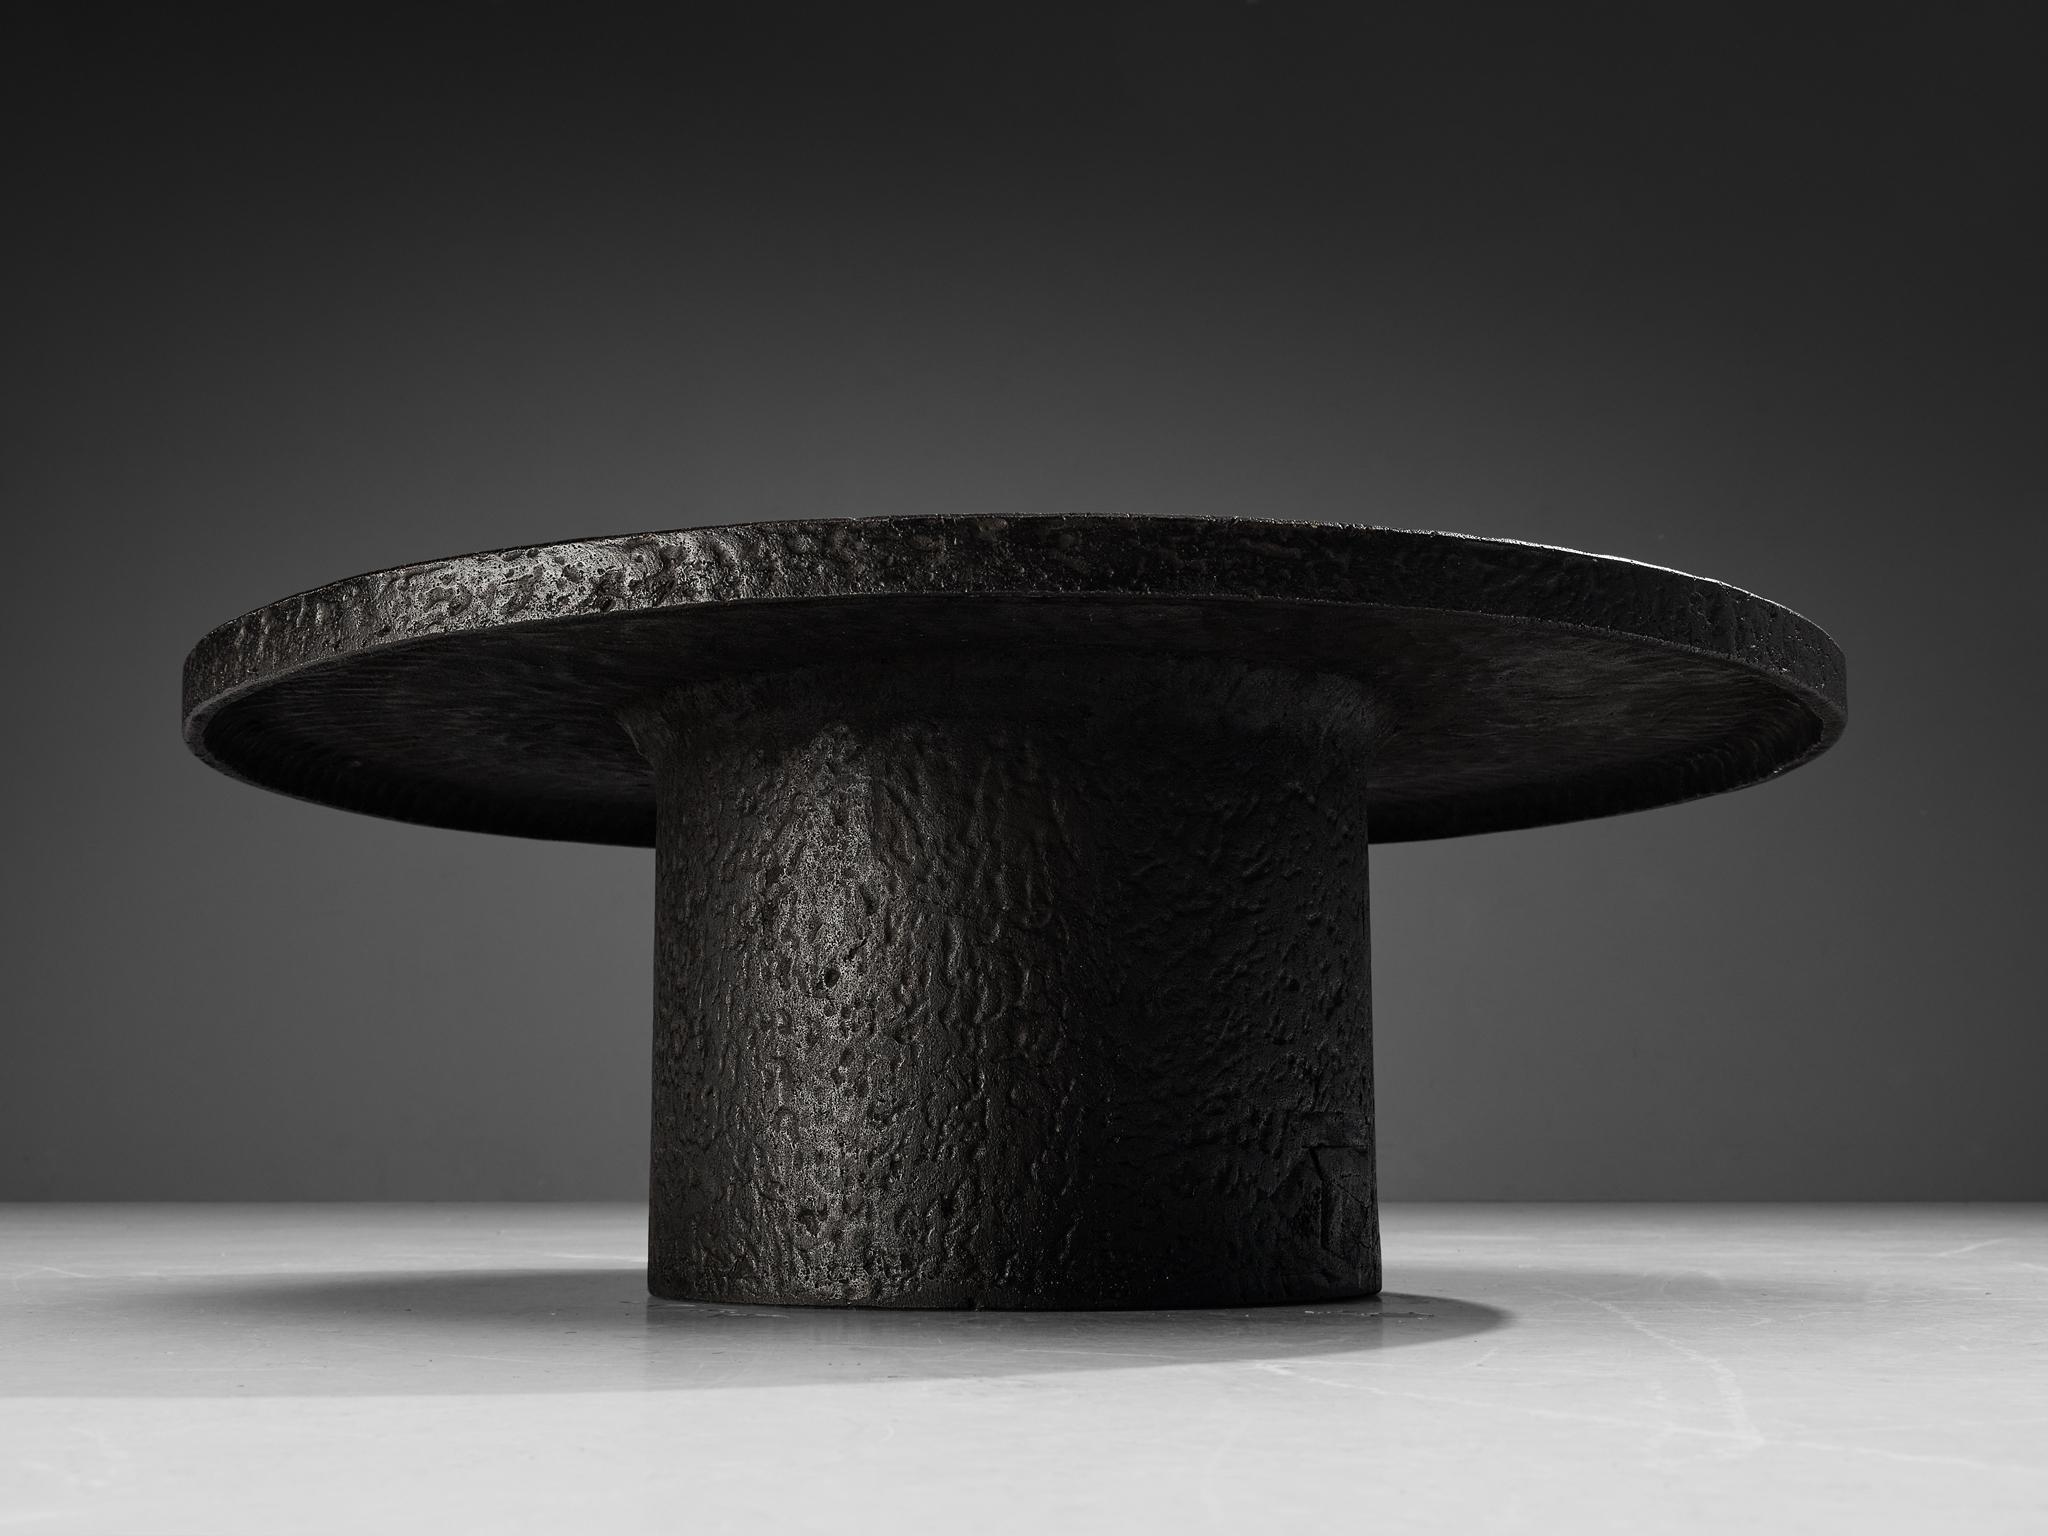 European Brutalist Round Coffee Table in Black Stone Look Resin